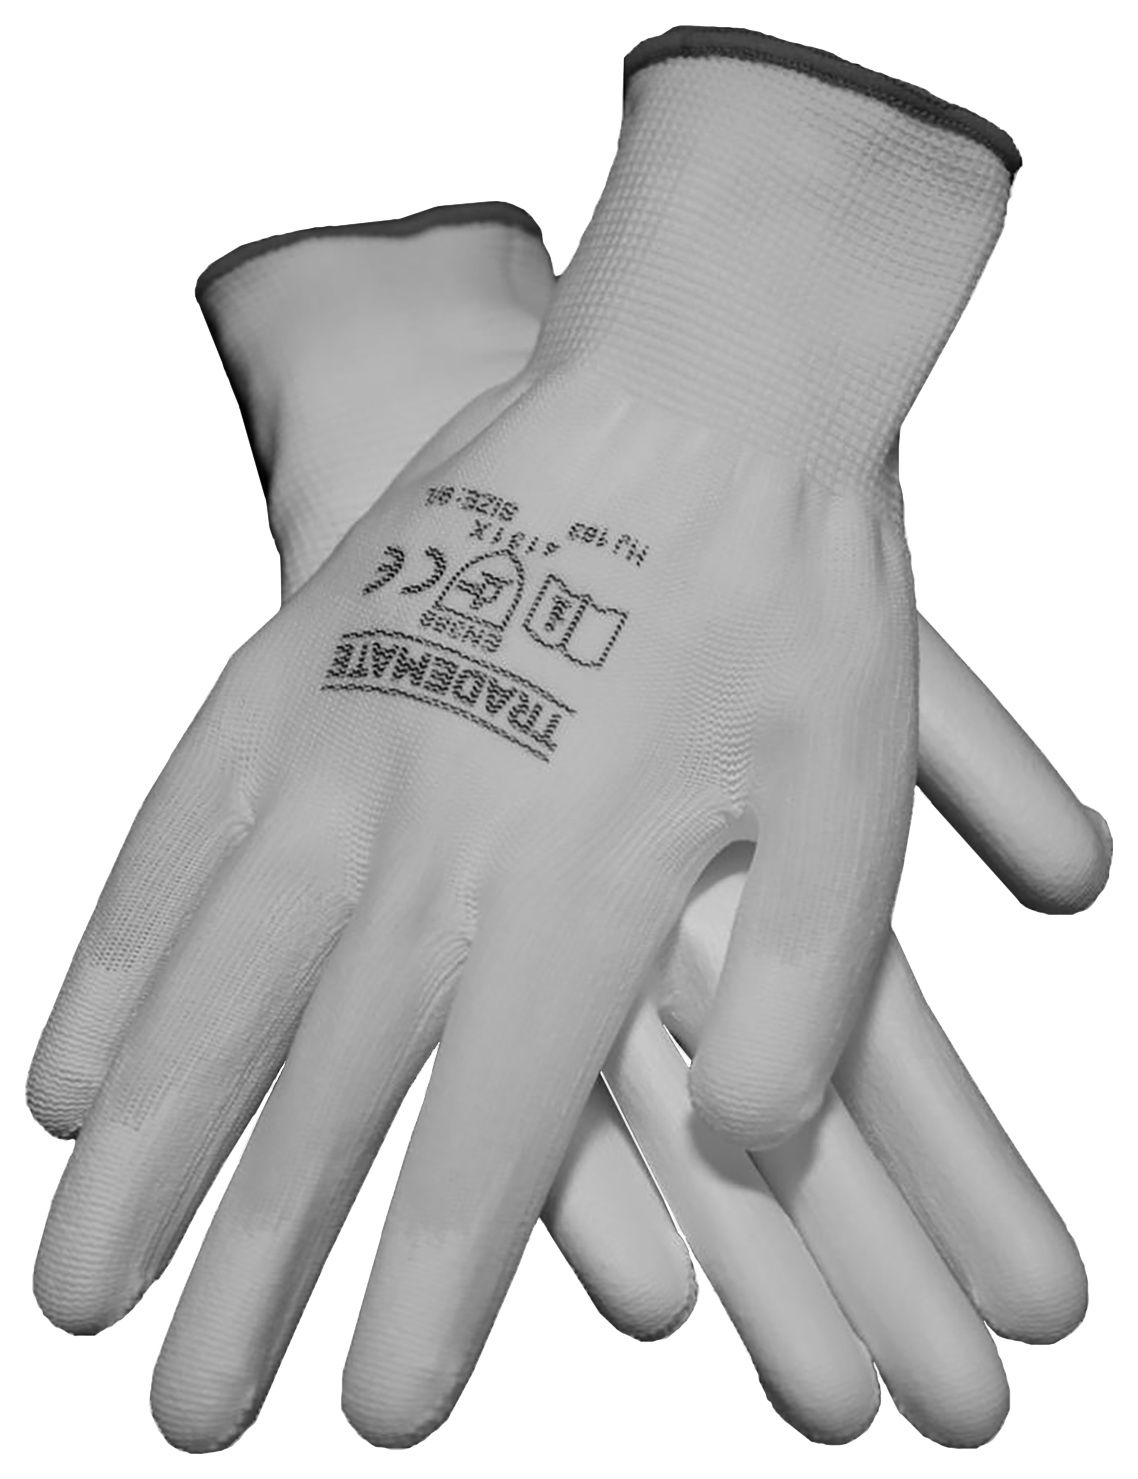 Image of TRADEMATE Decorators Glove White - Size 9 (L)